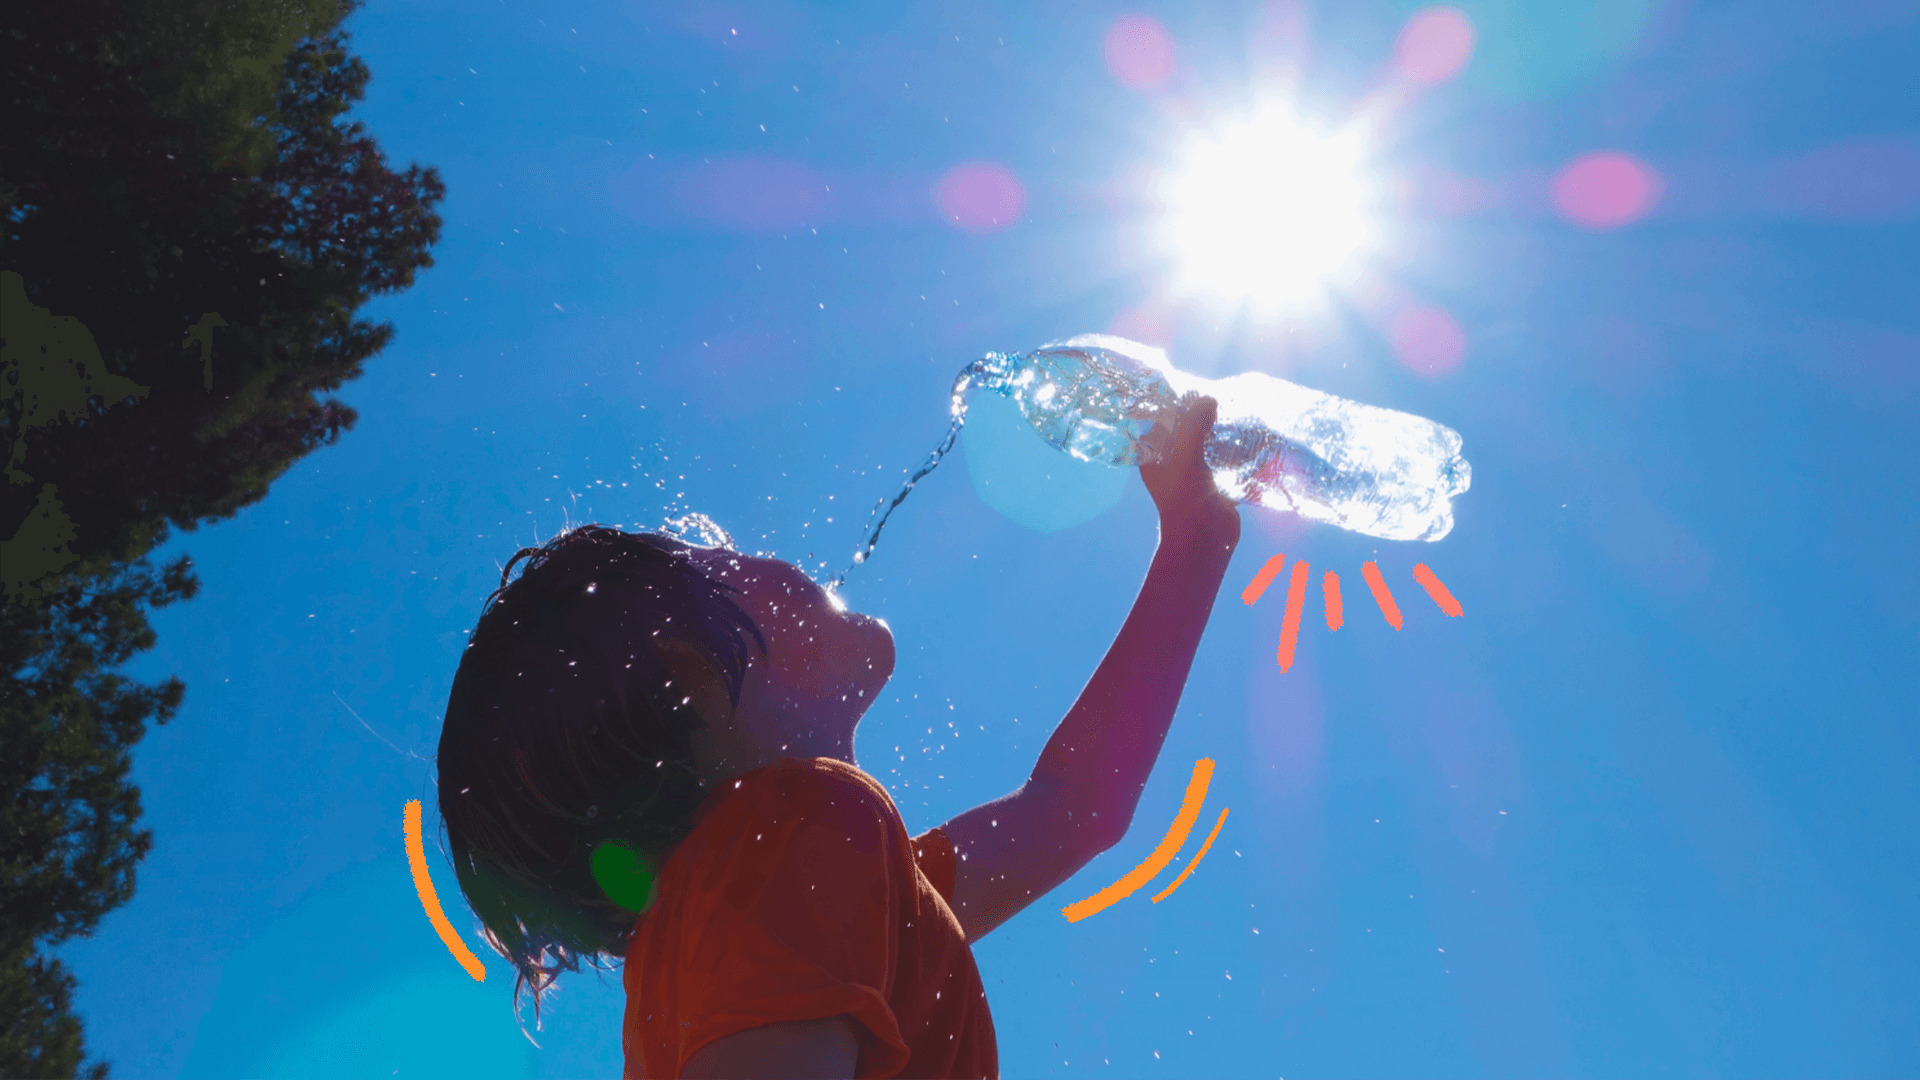 imagem sobre a onda de calor e escolas mostra uma criança de cabelos lisos derramando água de uma garrafa pet sobre o rosto